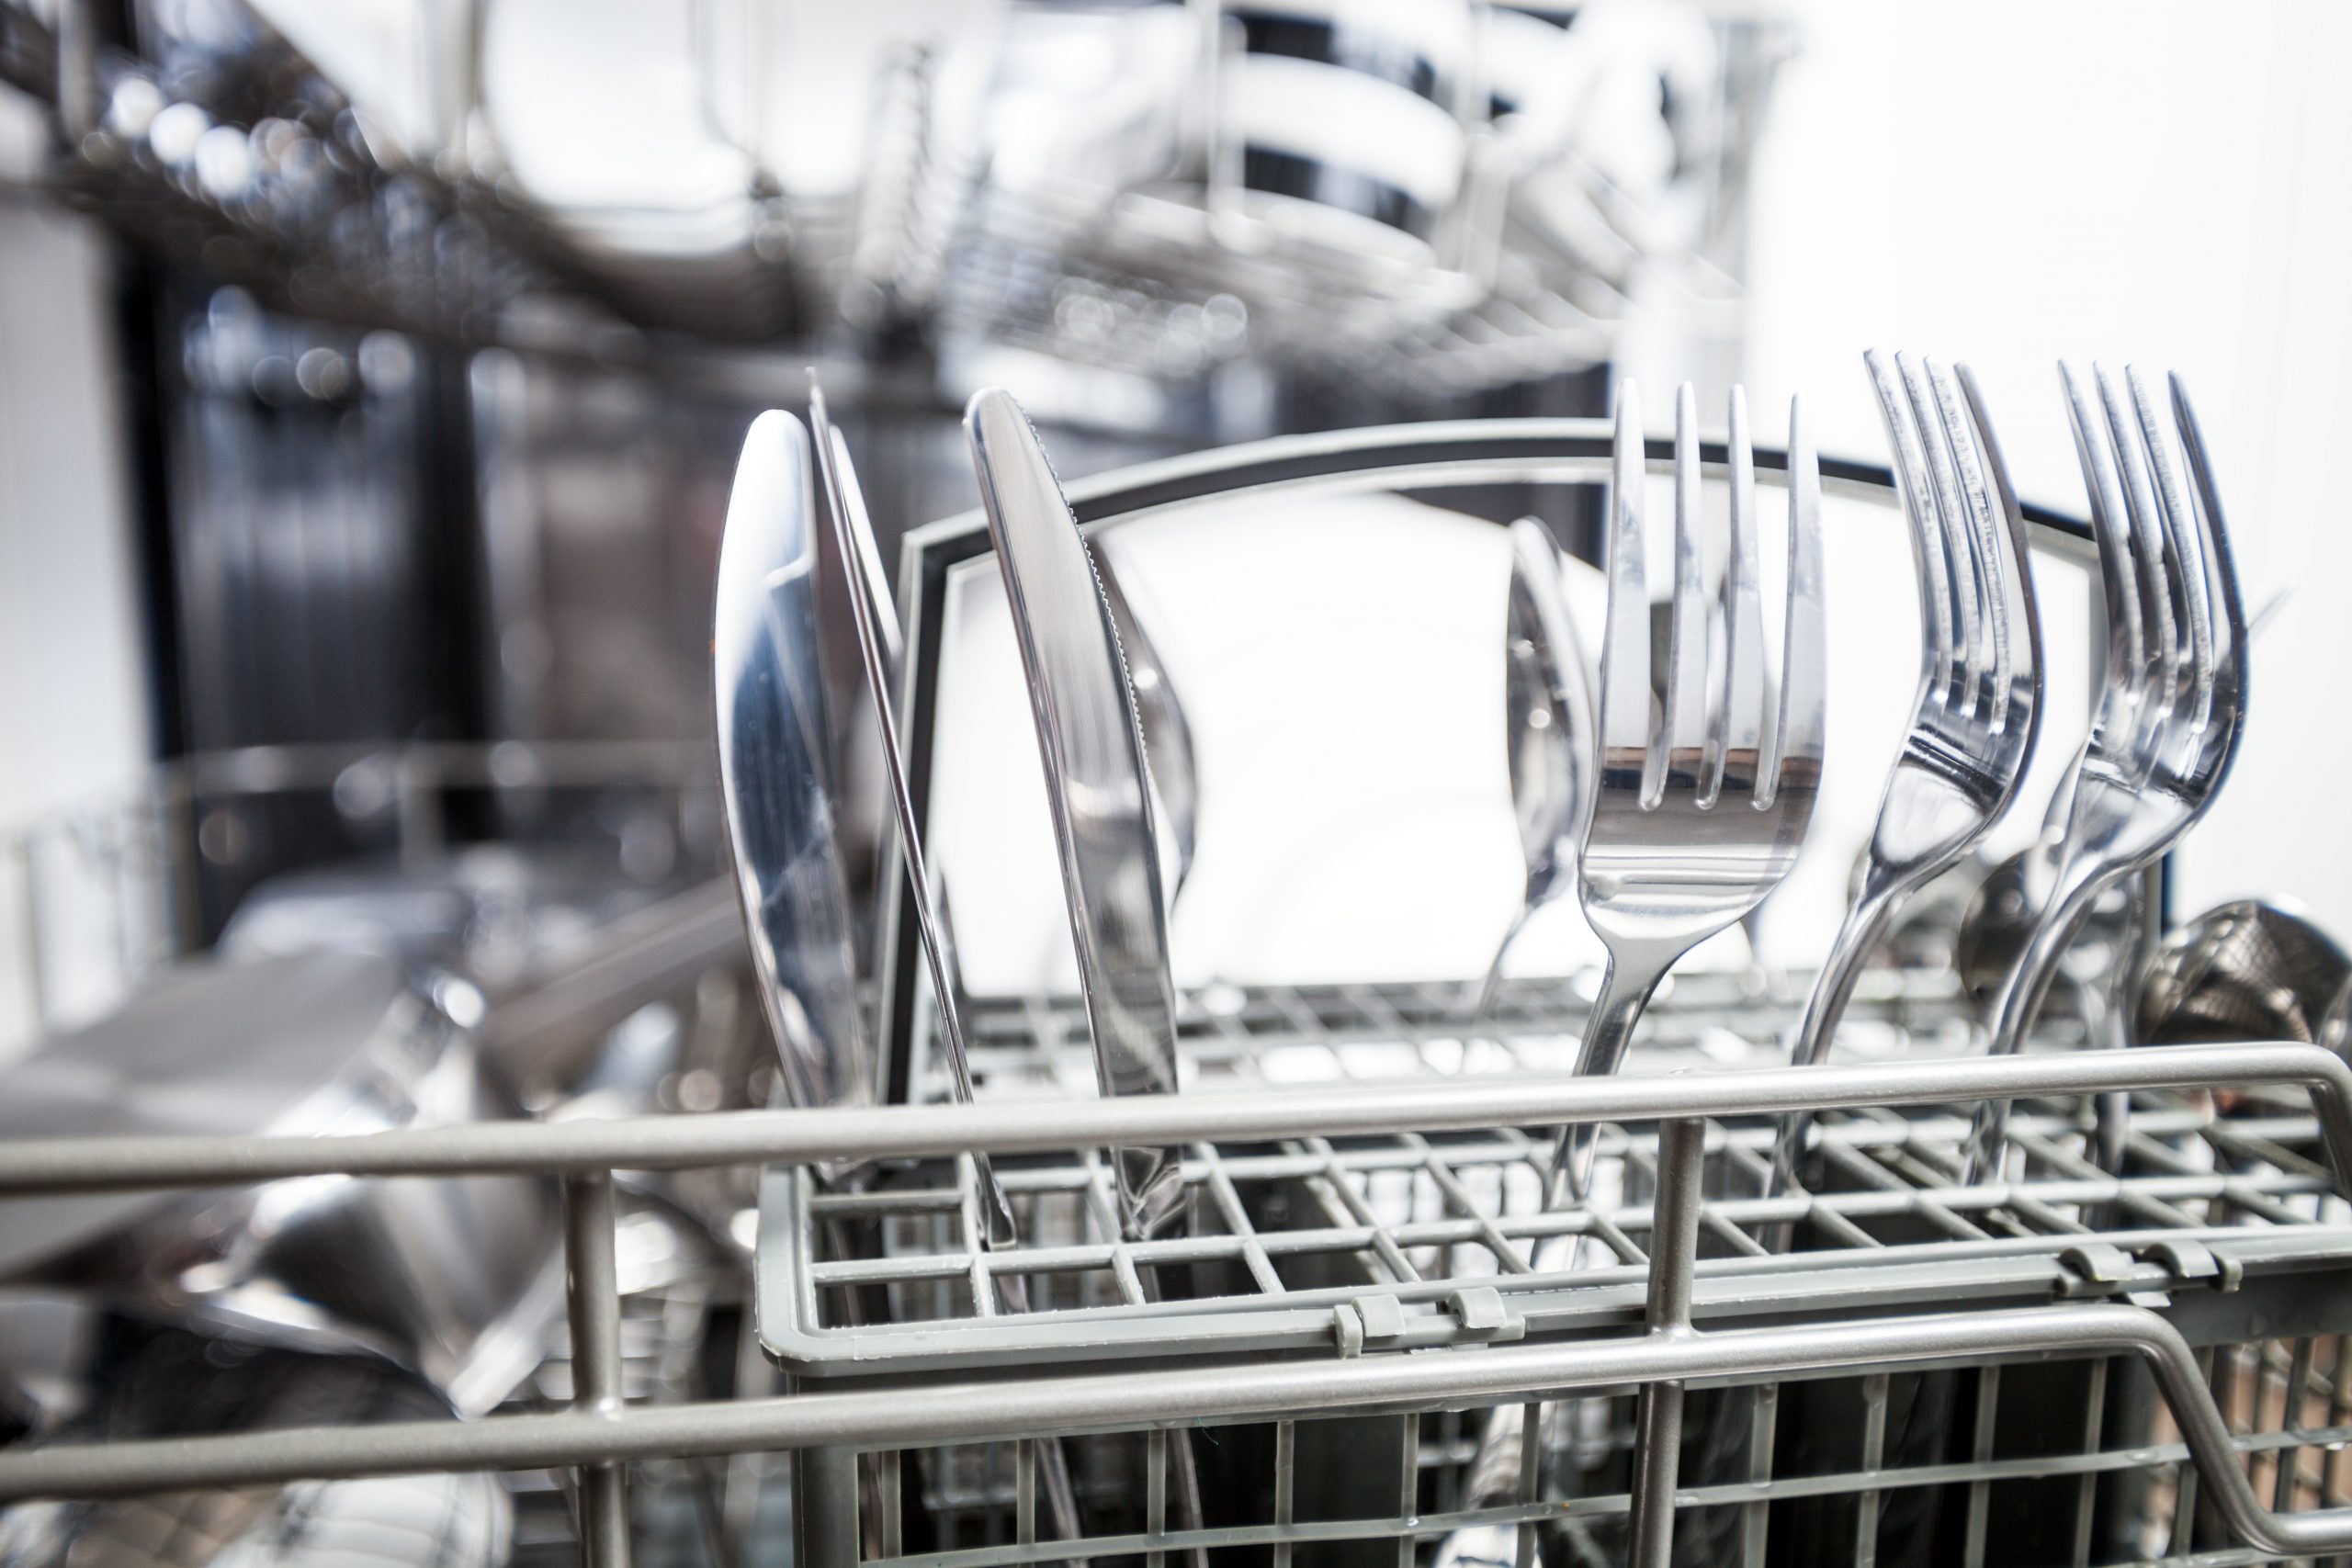 Standard Dishwasher Basket